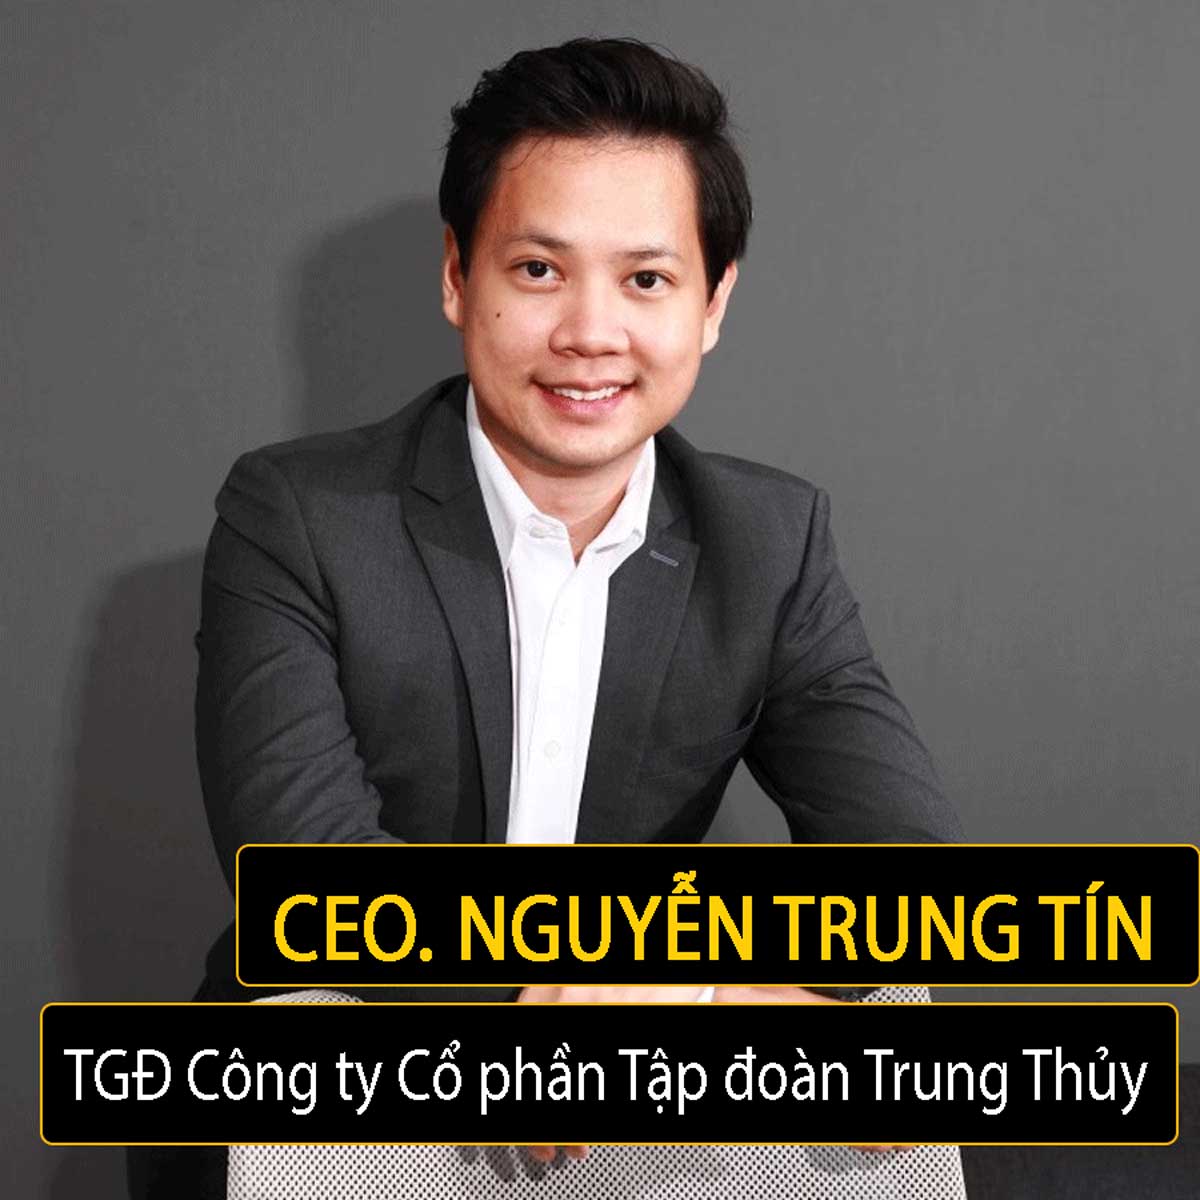 Chân dung Ông Nguyễn Trung Tín - TGĐ Công ty Cổ phần Tập đoàn Trung Thủy